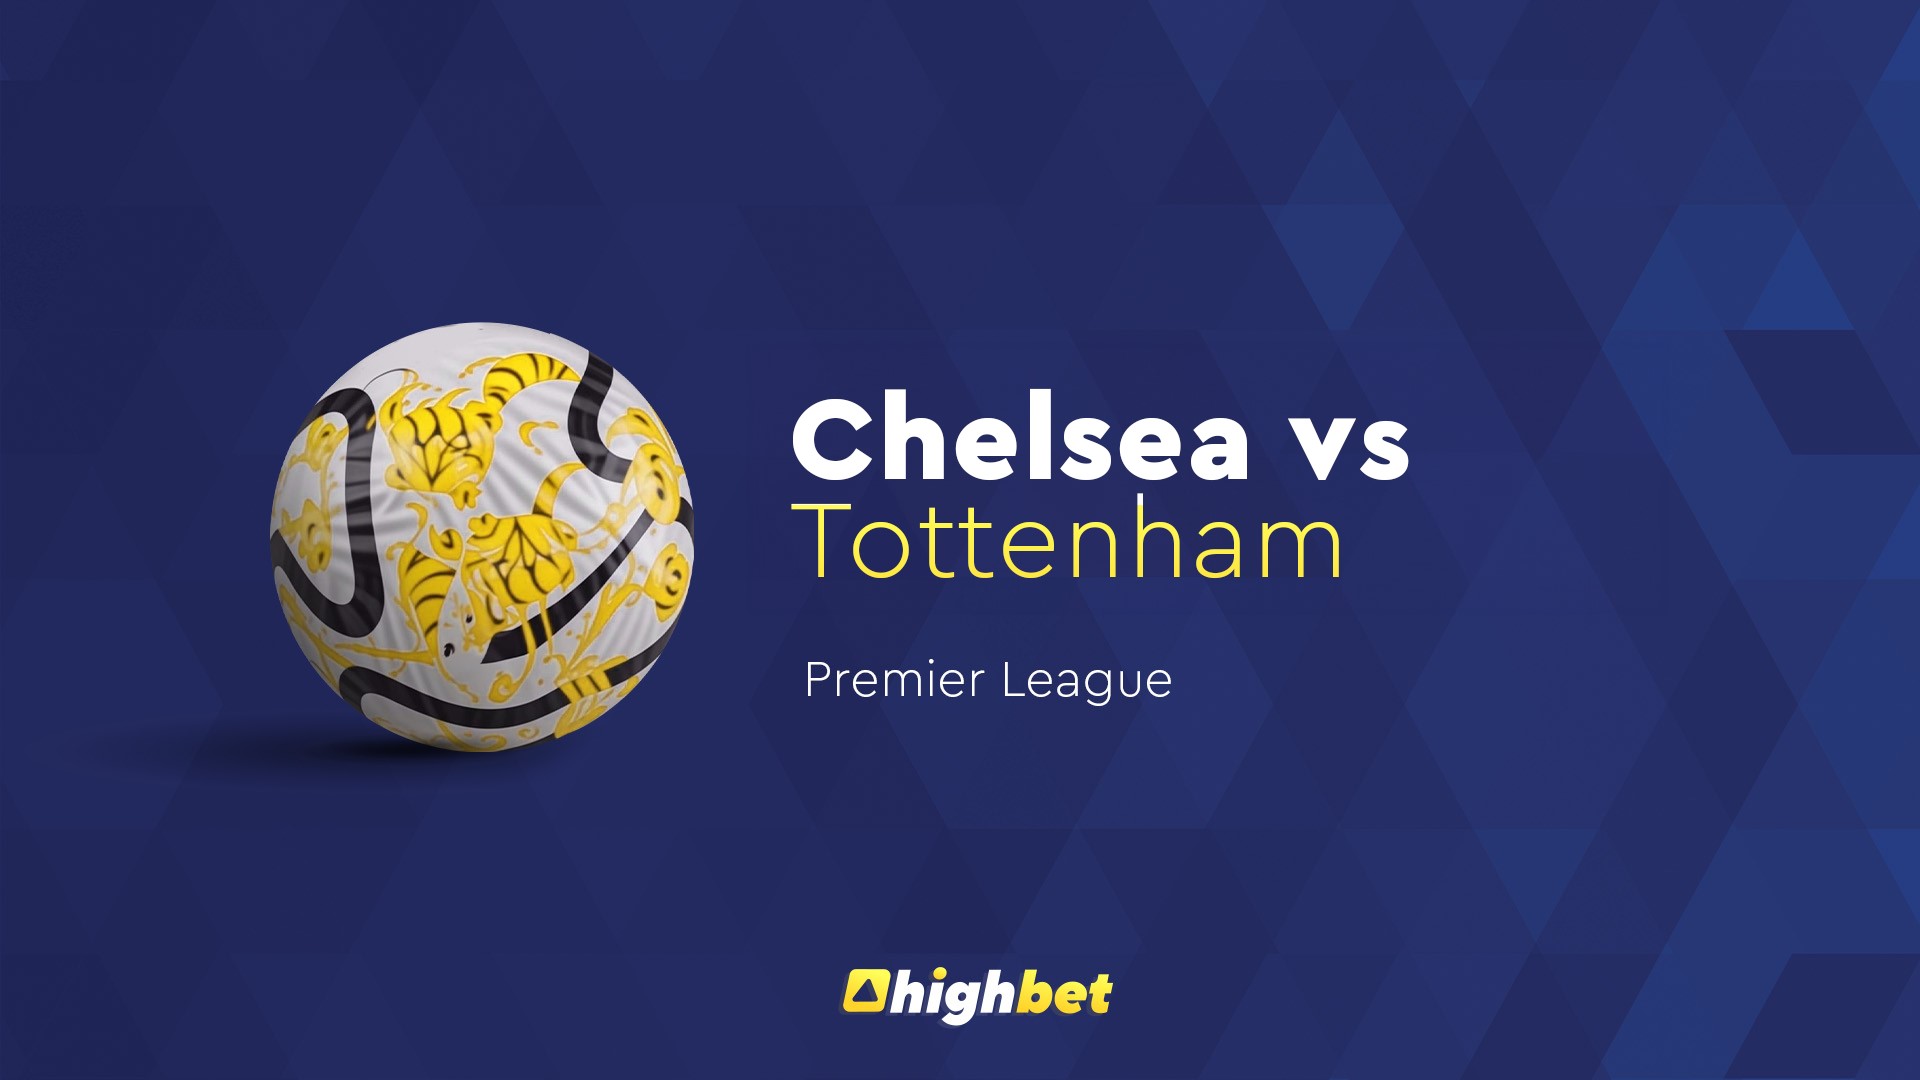 Chelsea vs Tottenham - Highbet Preview - Premier League Prediction